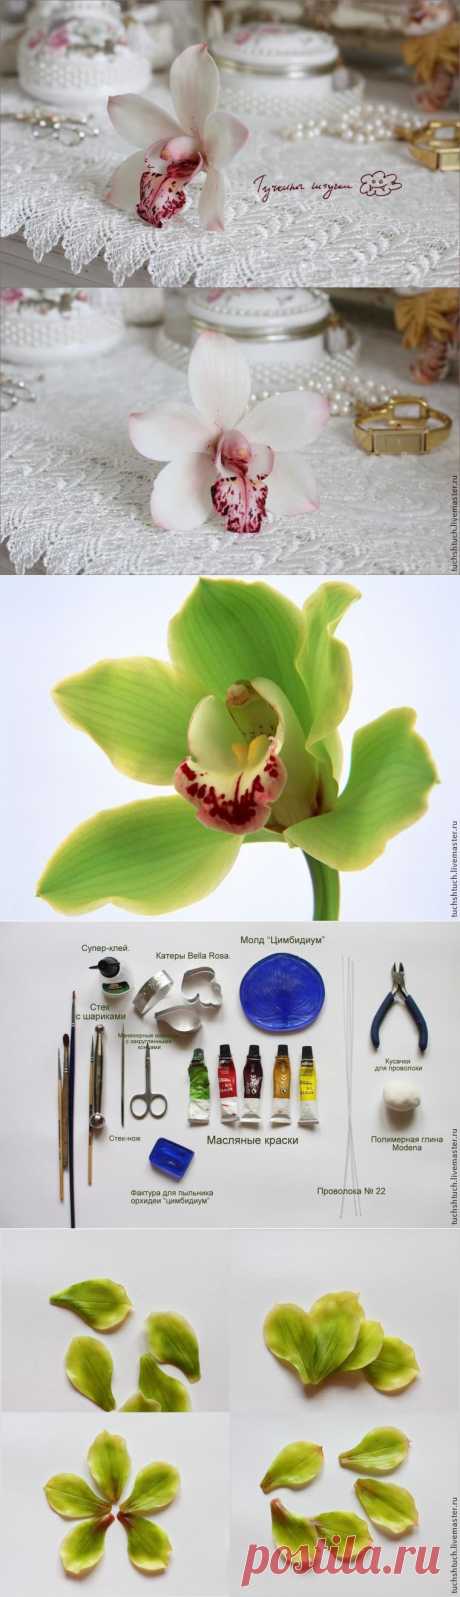 Лепка орхидеи цимбидиум из полимерной глины - Ярмарка Мастеров - ручная работа, handmade